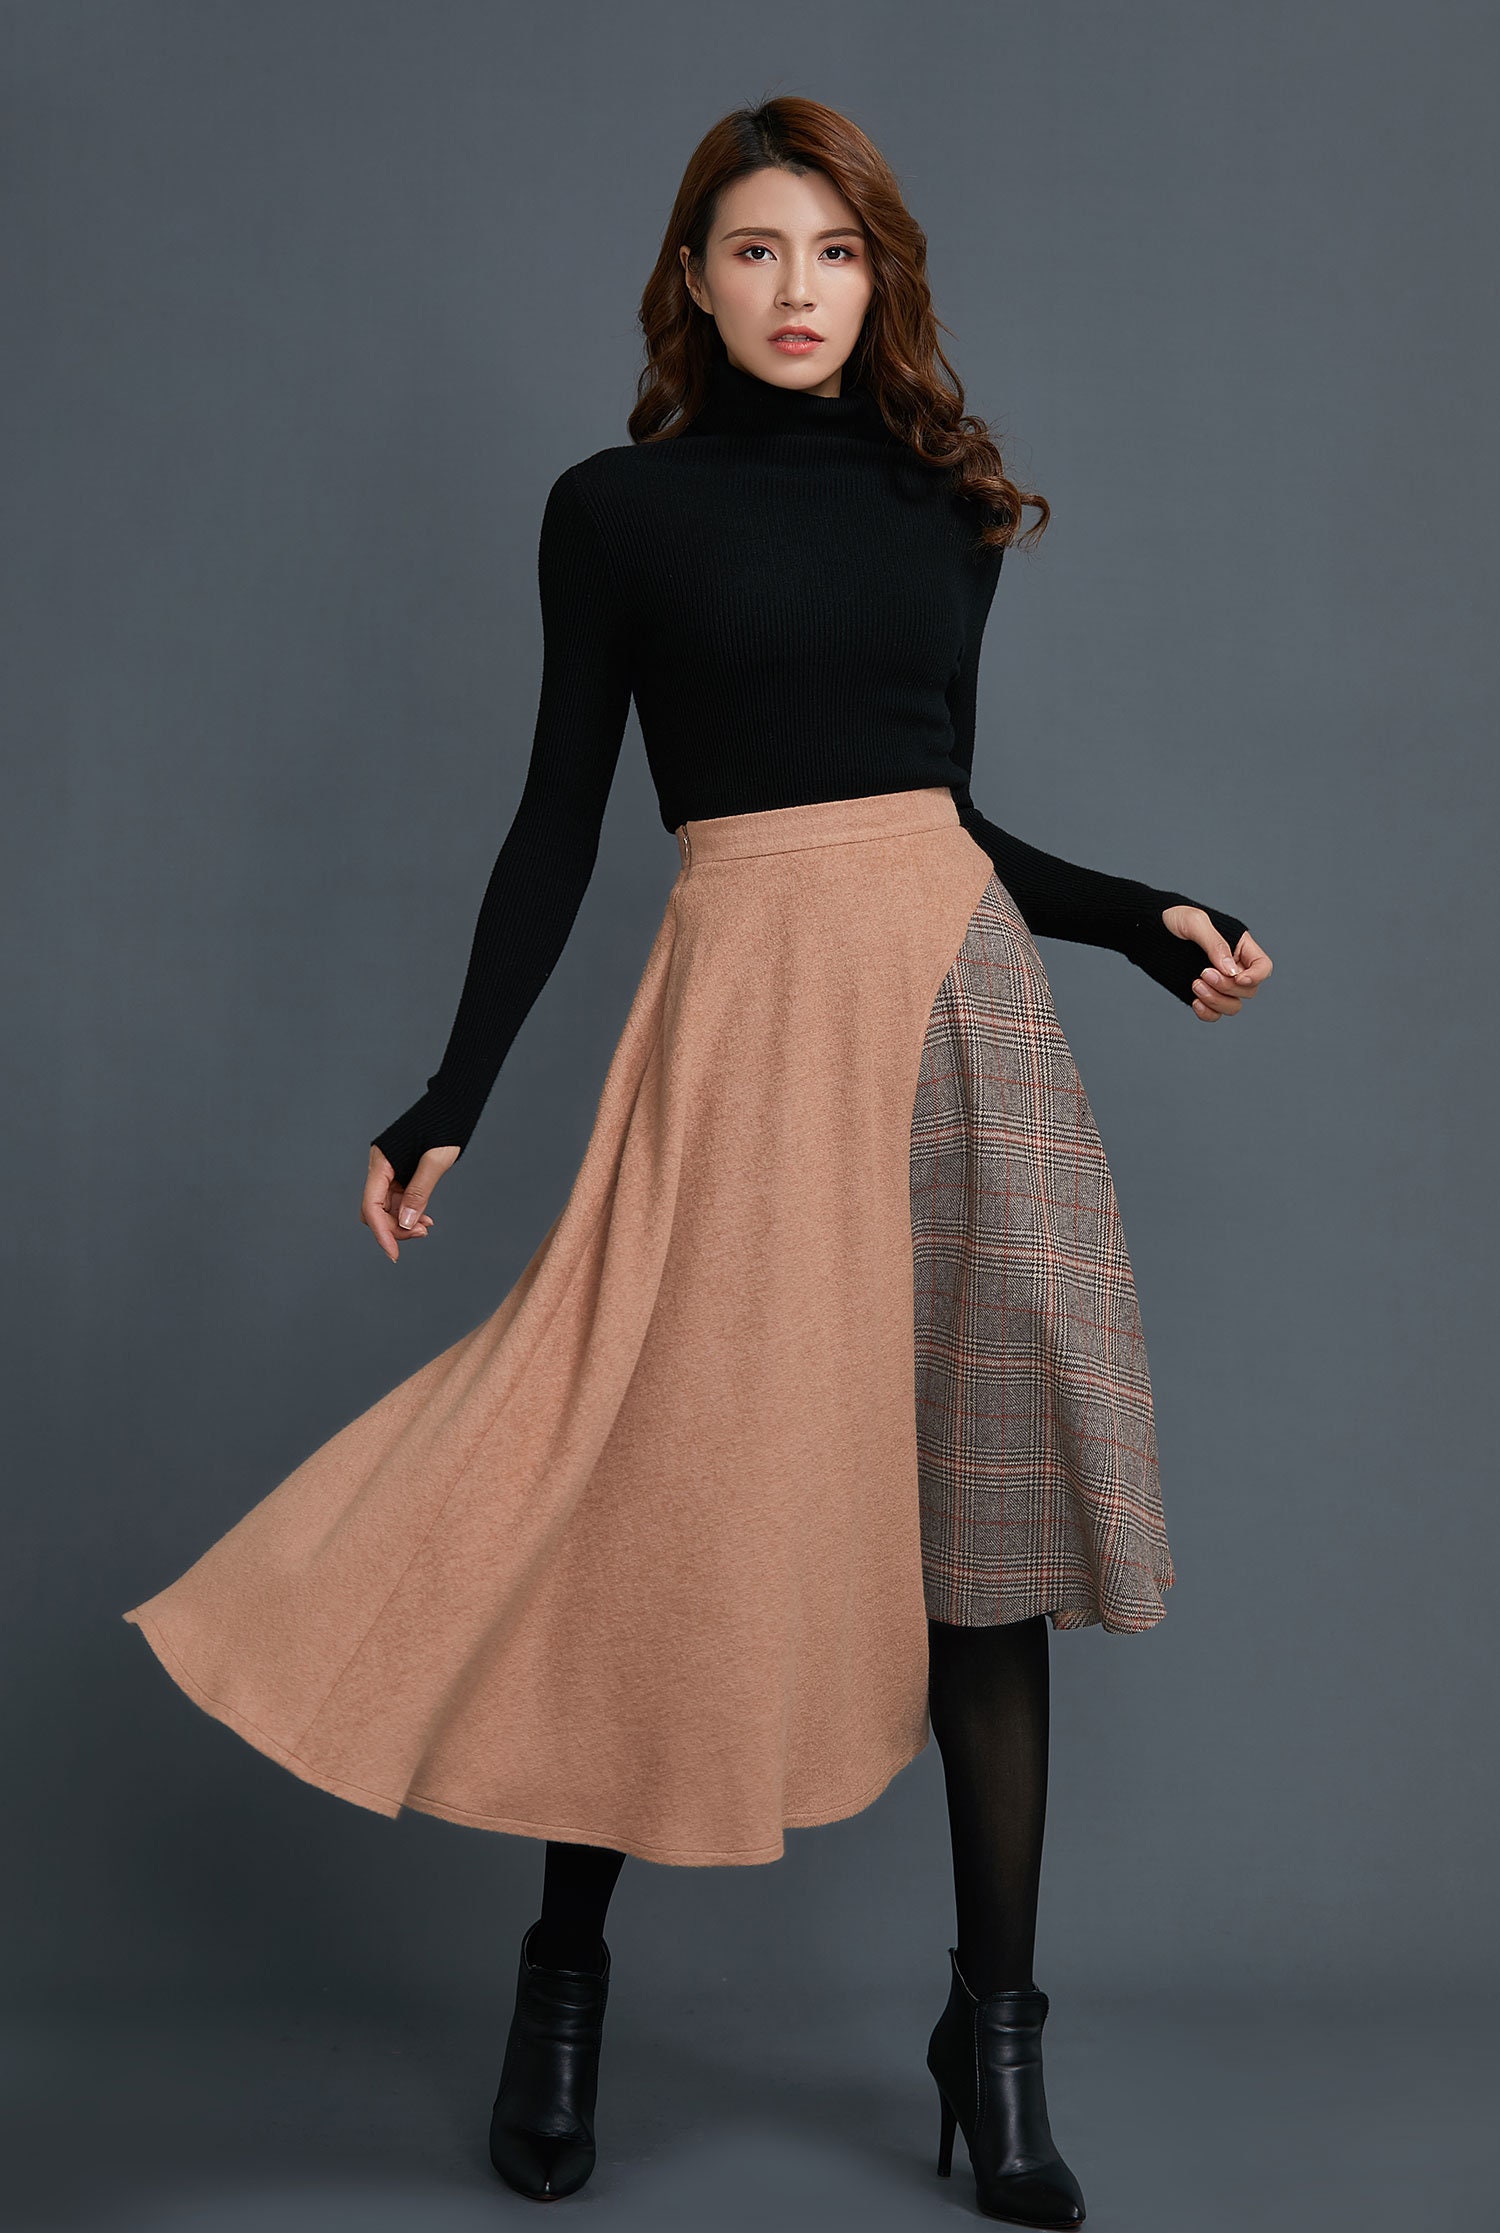 Asymmetrical wool skirt Wool skirt vintage Patchwork wool | Etsy